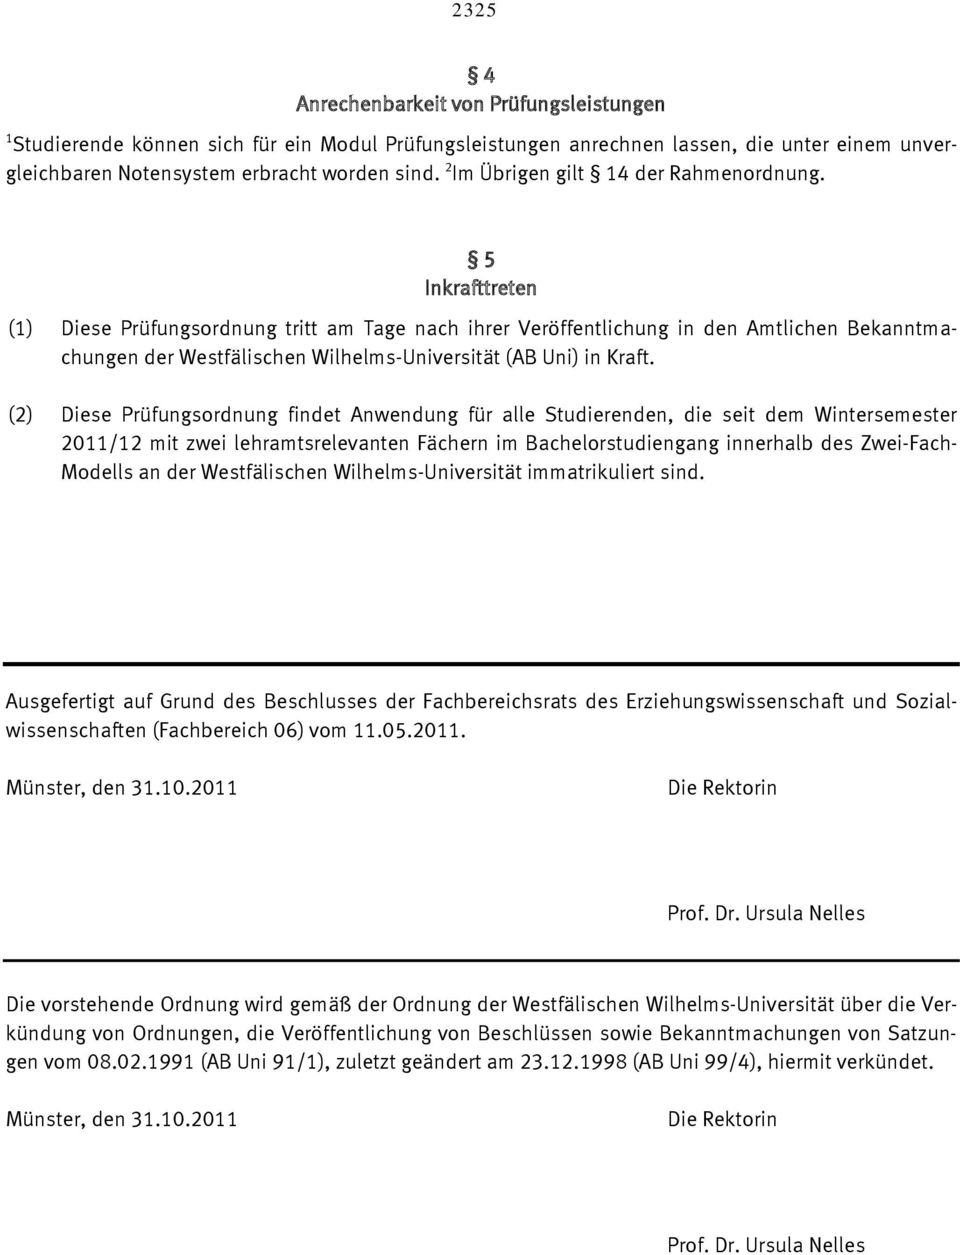 5 Inkrafttreten (1) Diese Prüfungsordnung tritt am Tage nach ihrer Veröffentlichung in den Amtlichen Bekanntmachungen der Westfälischen Wilhelms-Universität (AB Uni) in Kraft.